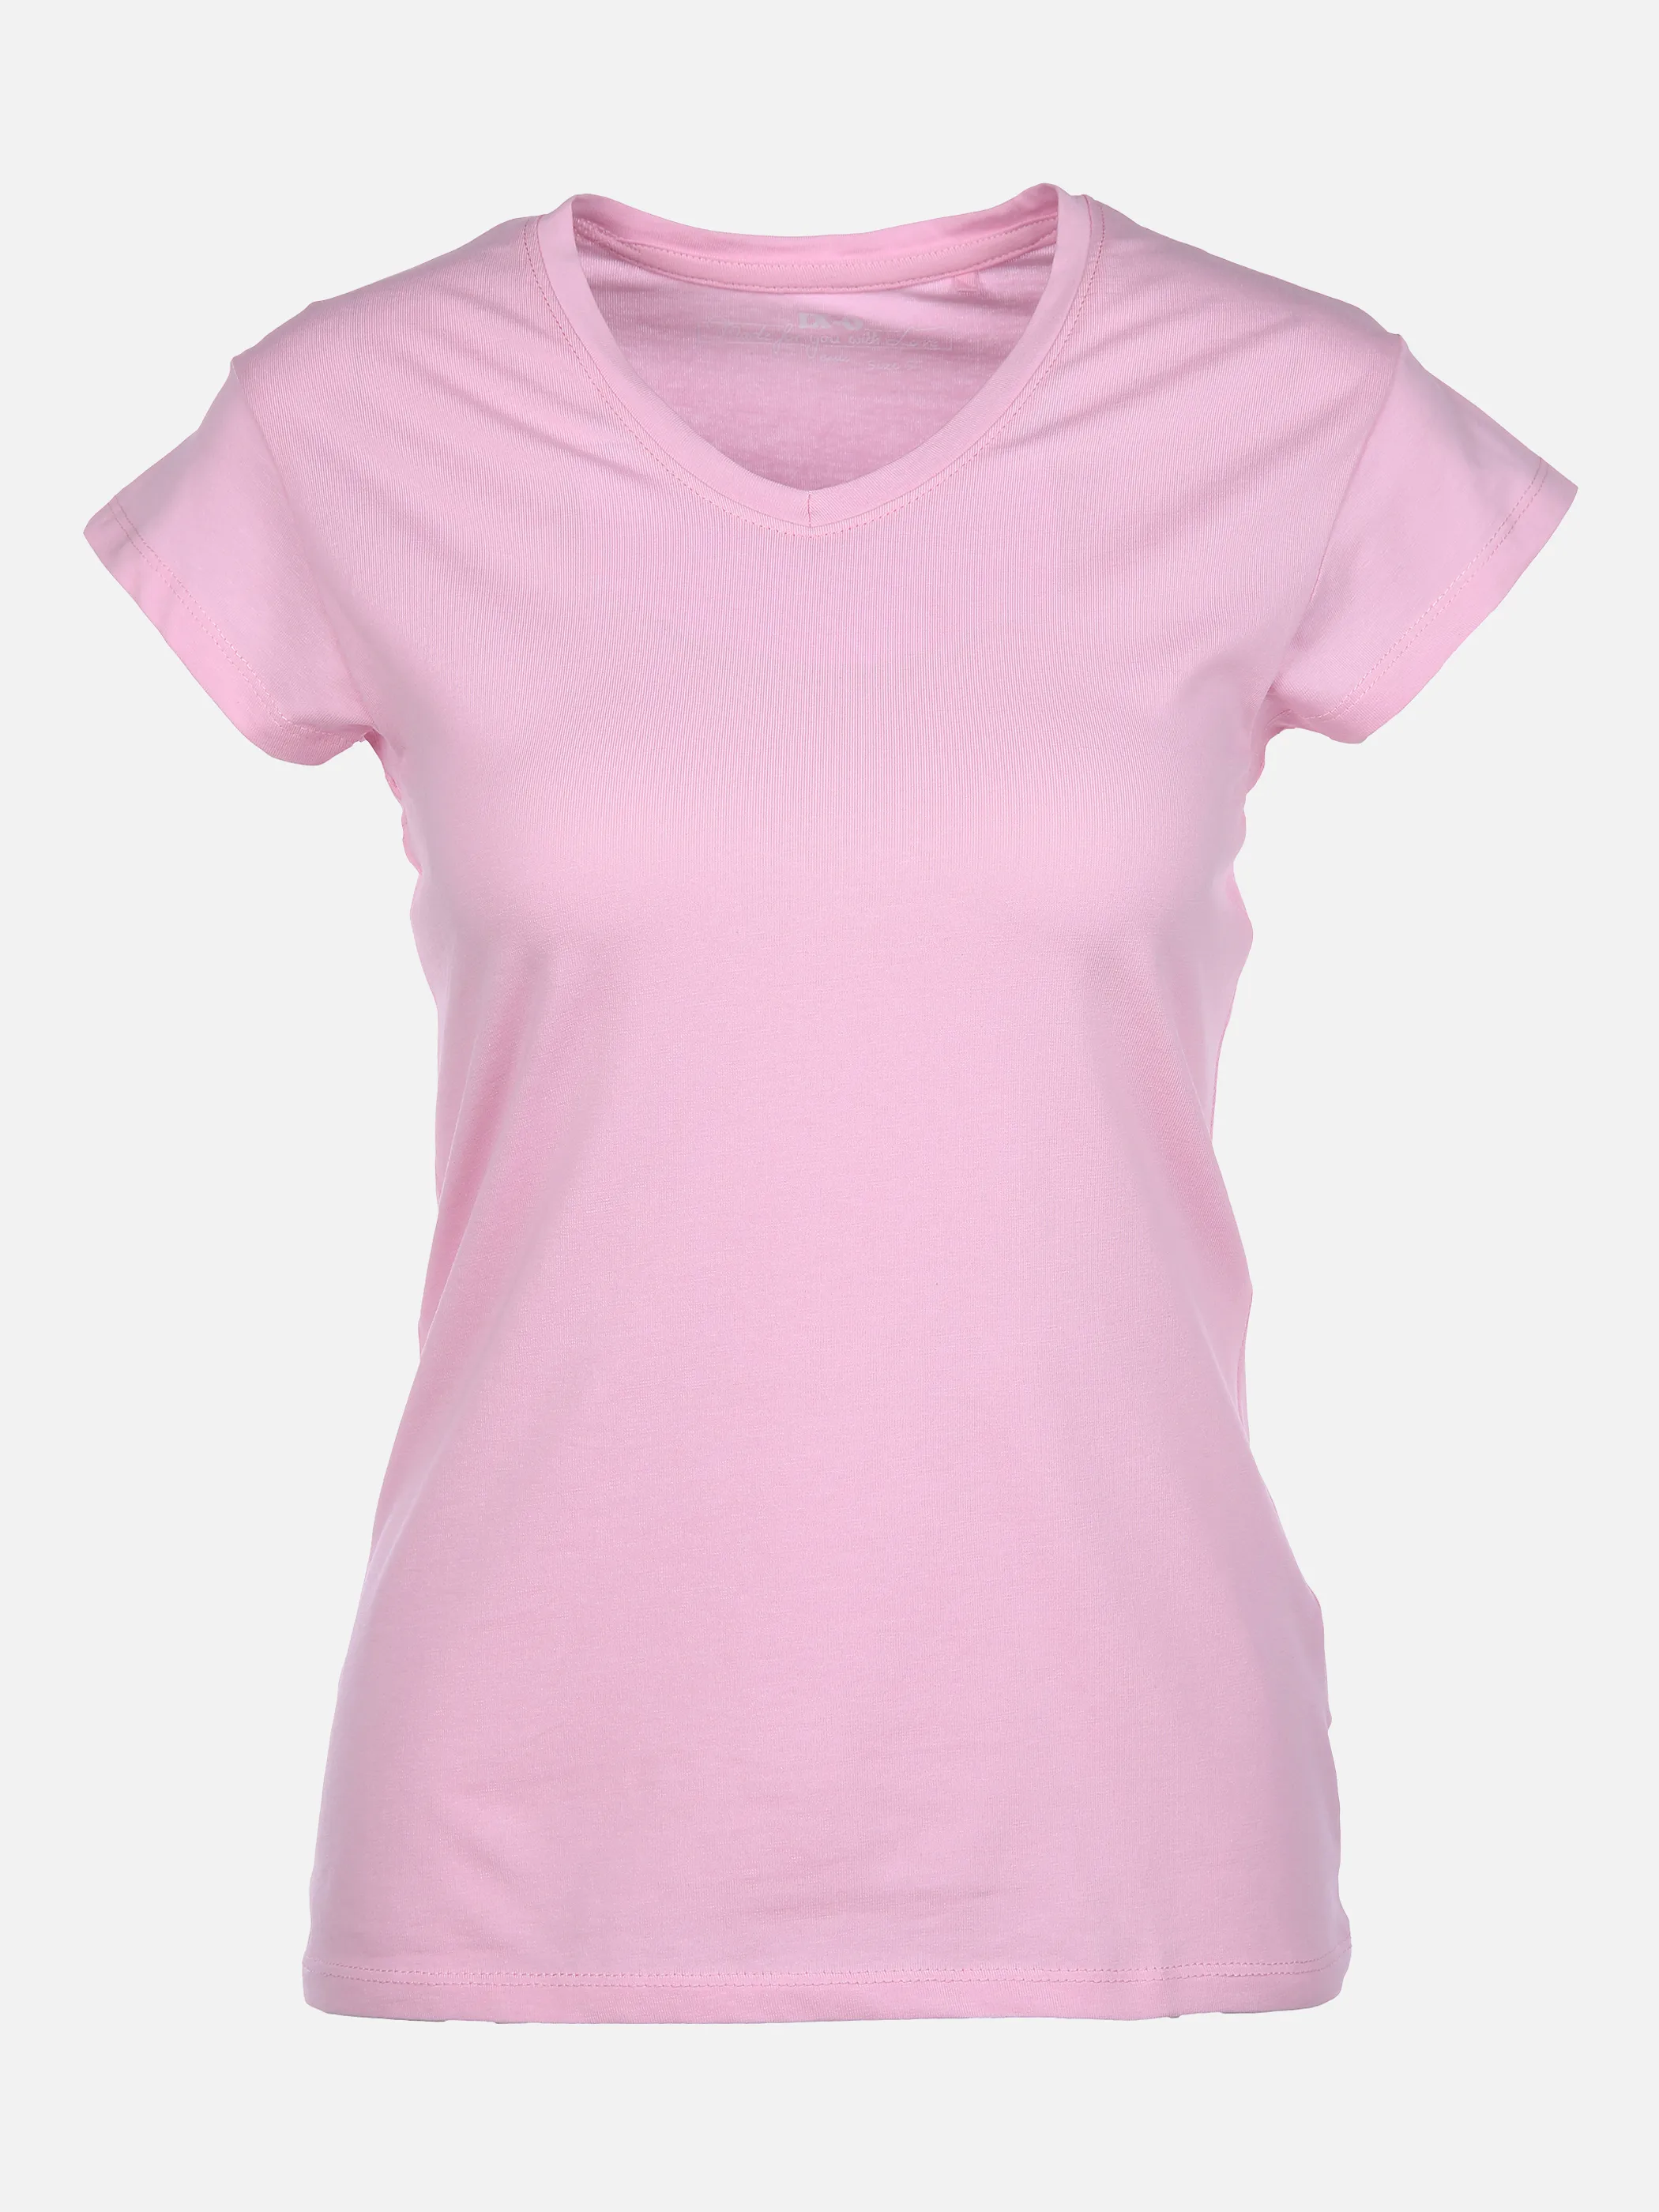 IX-O YF-Da-T-Shirt, V-Neck Pink 863770 14-2710TCX 1